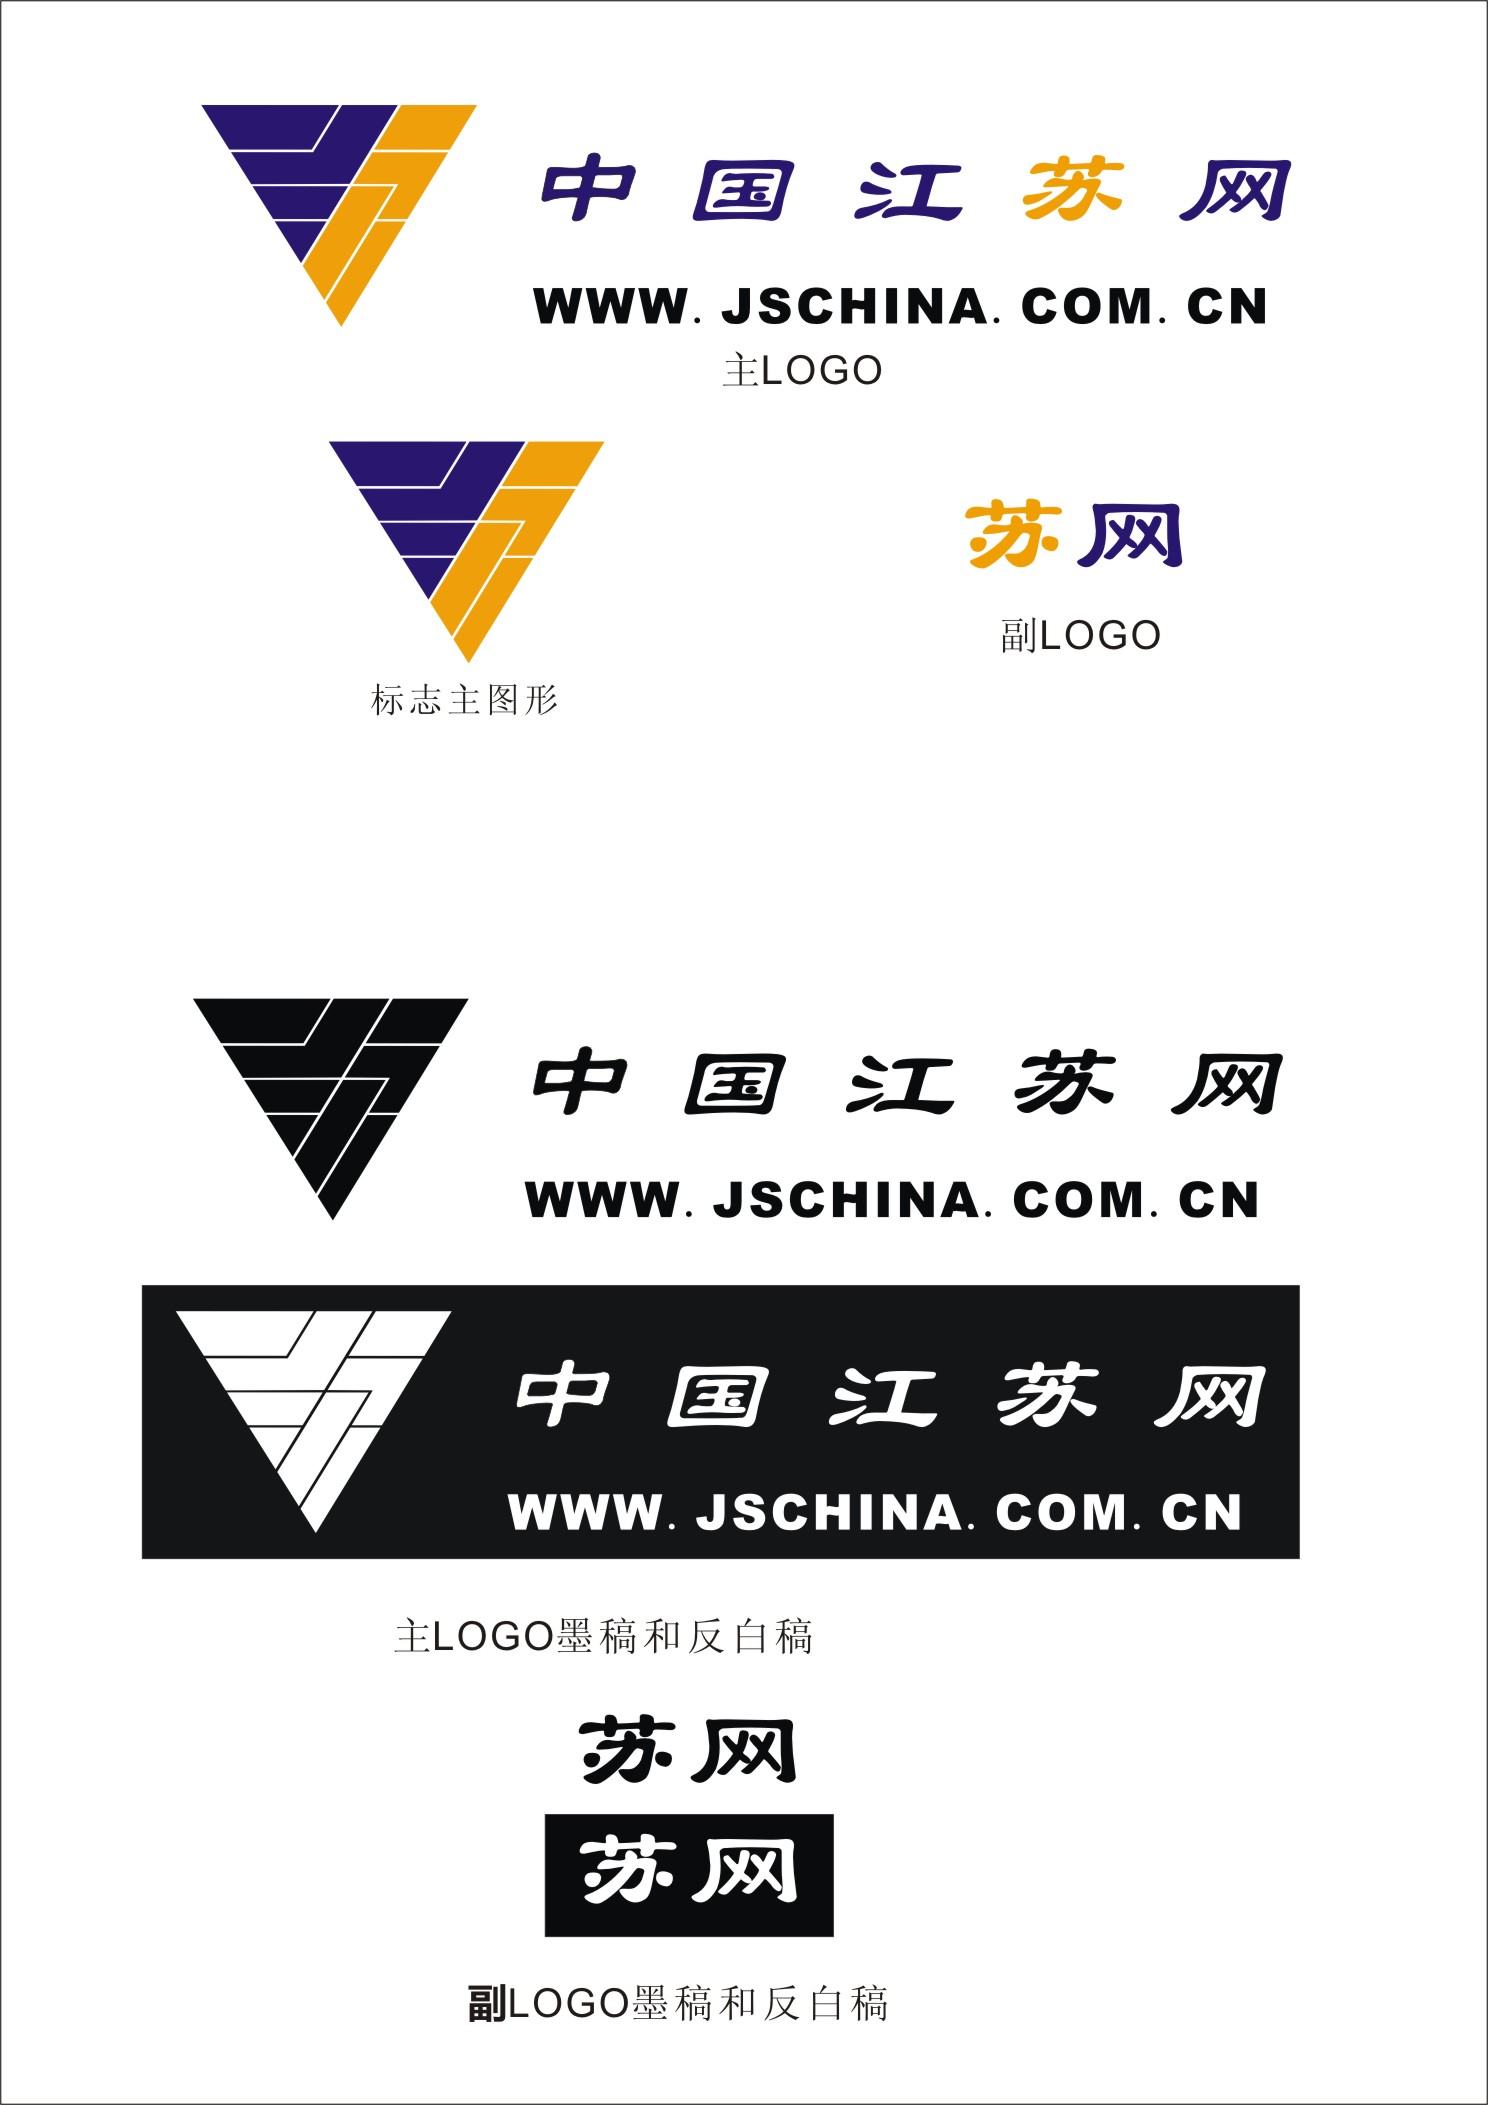 中国江苏网新logo_第二方案